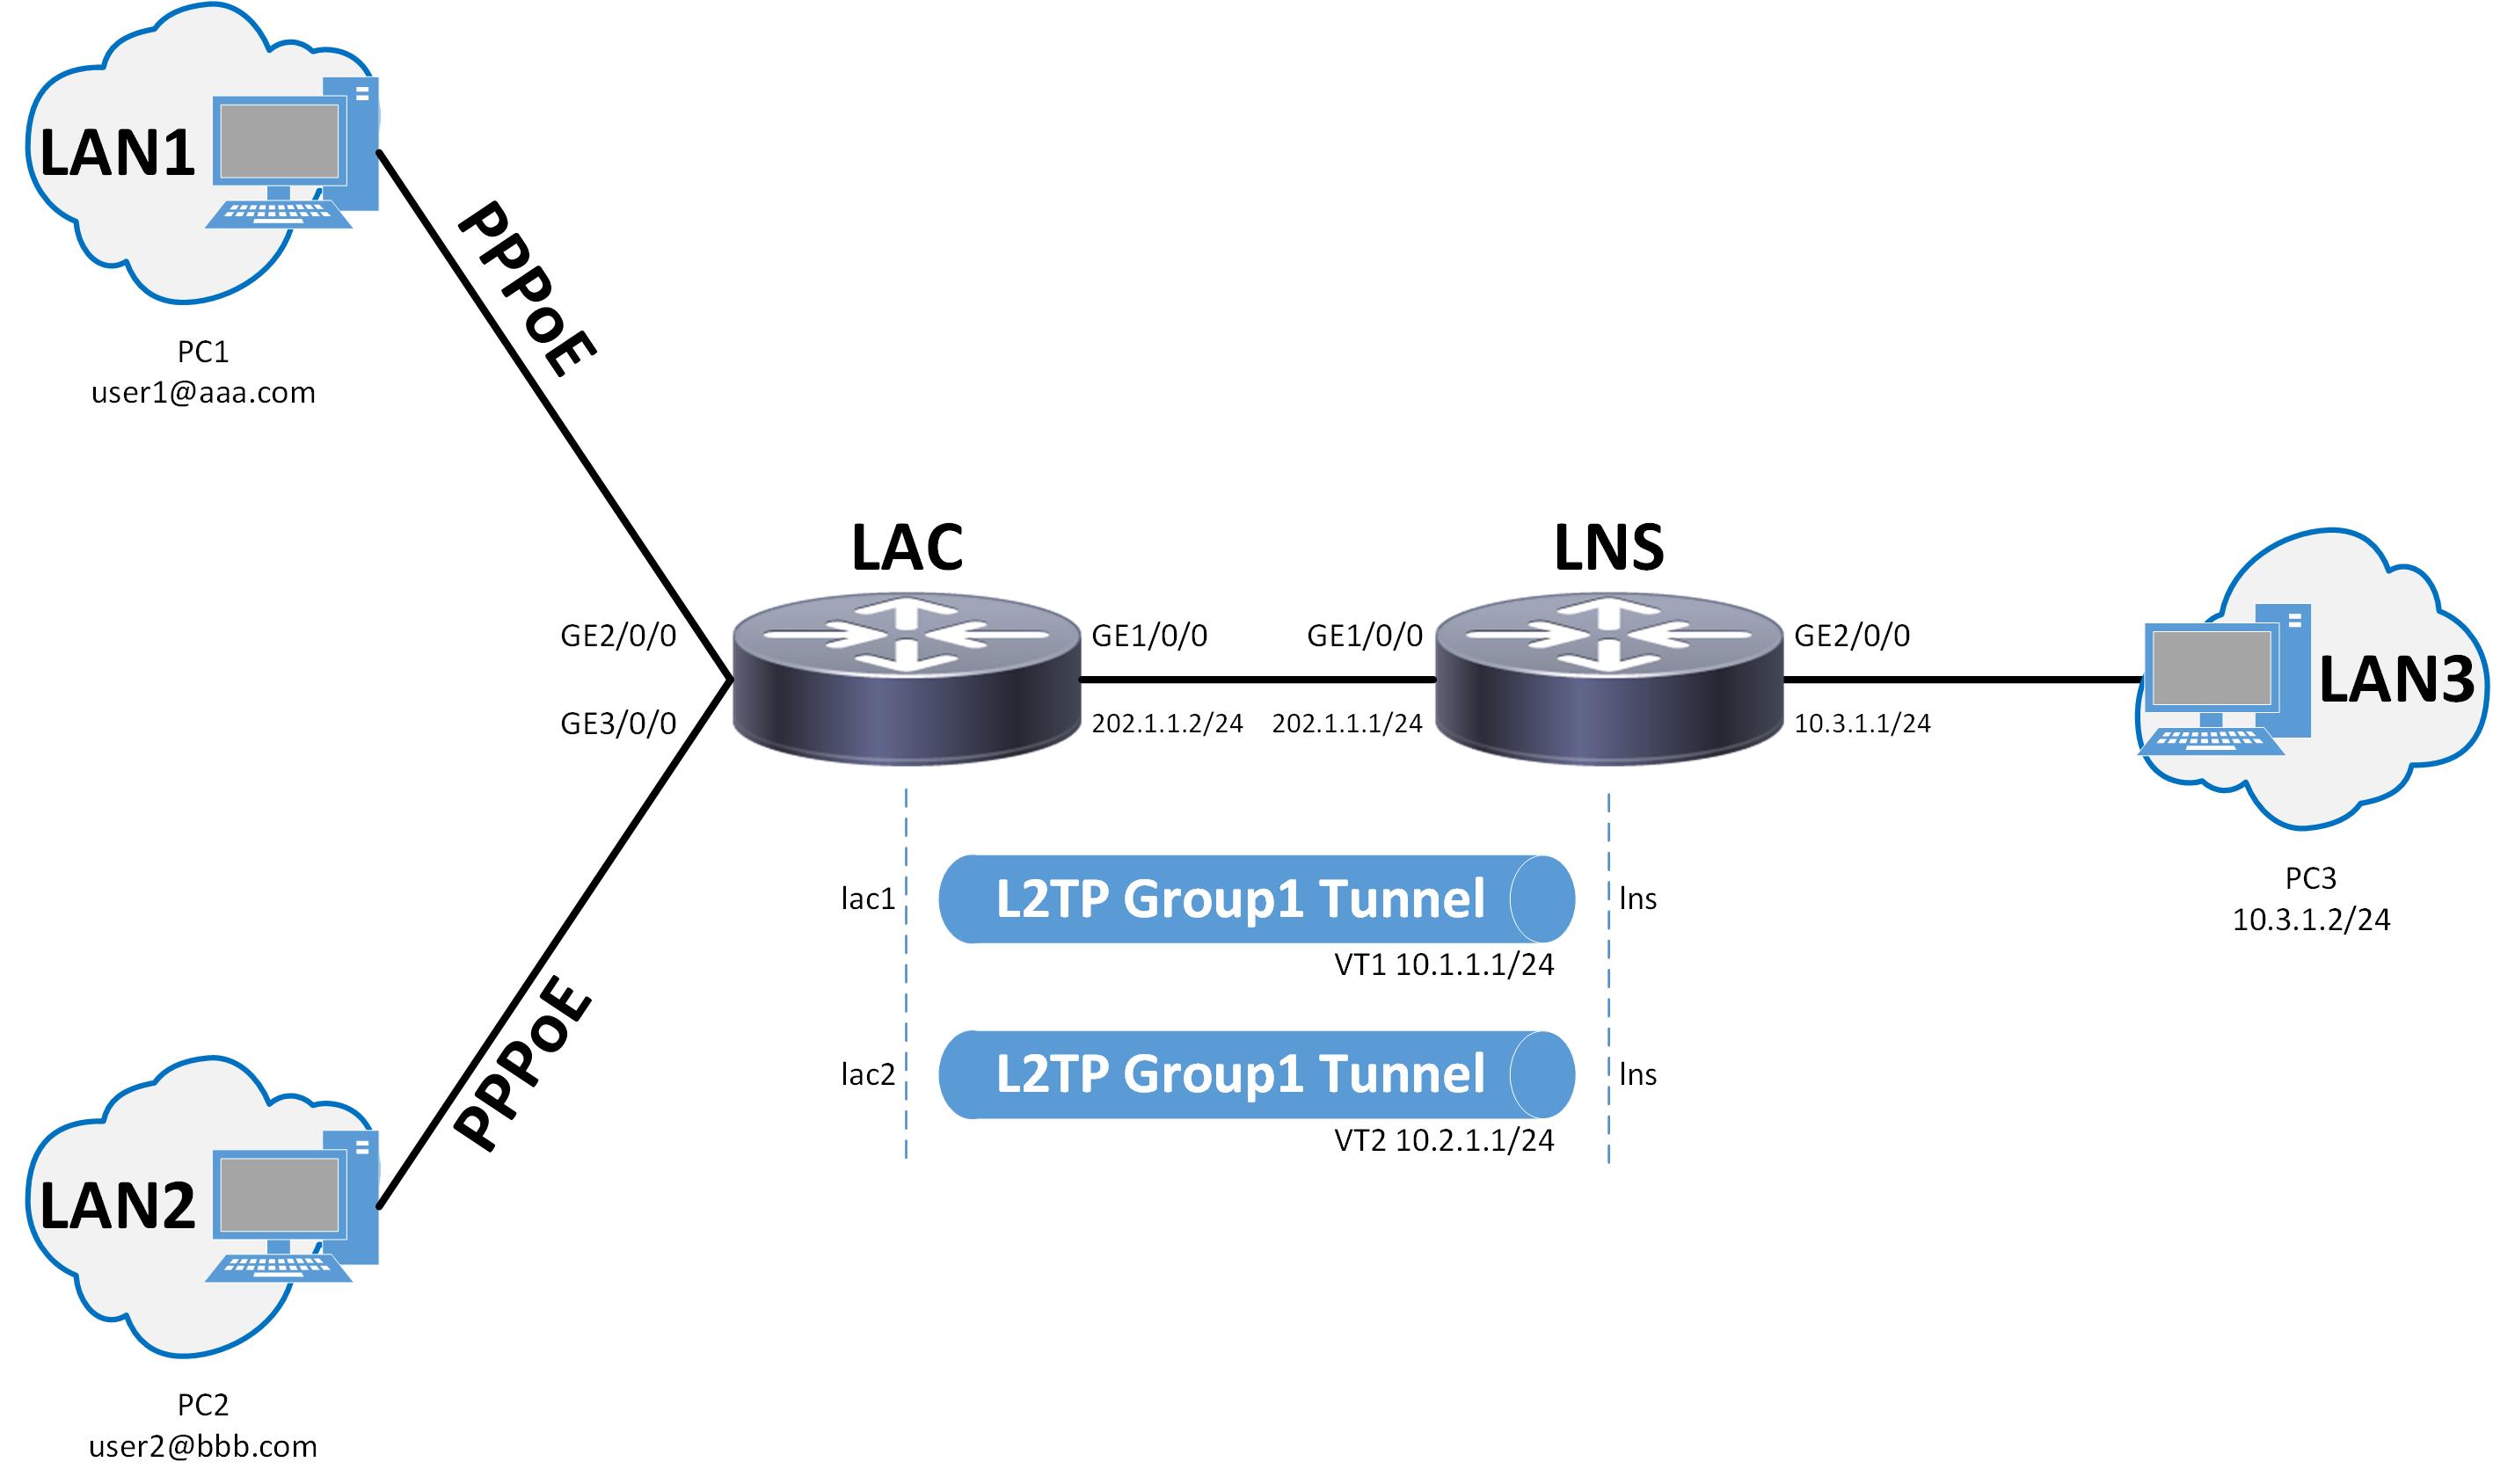 protocolos que generan una vpn pptp l2f l2tp ports